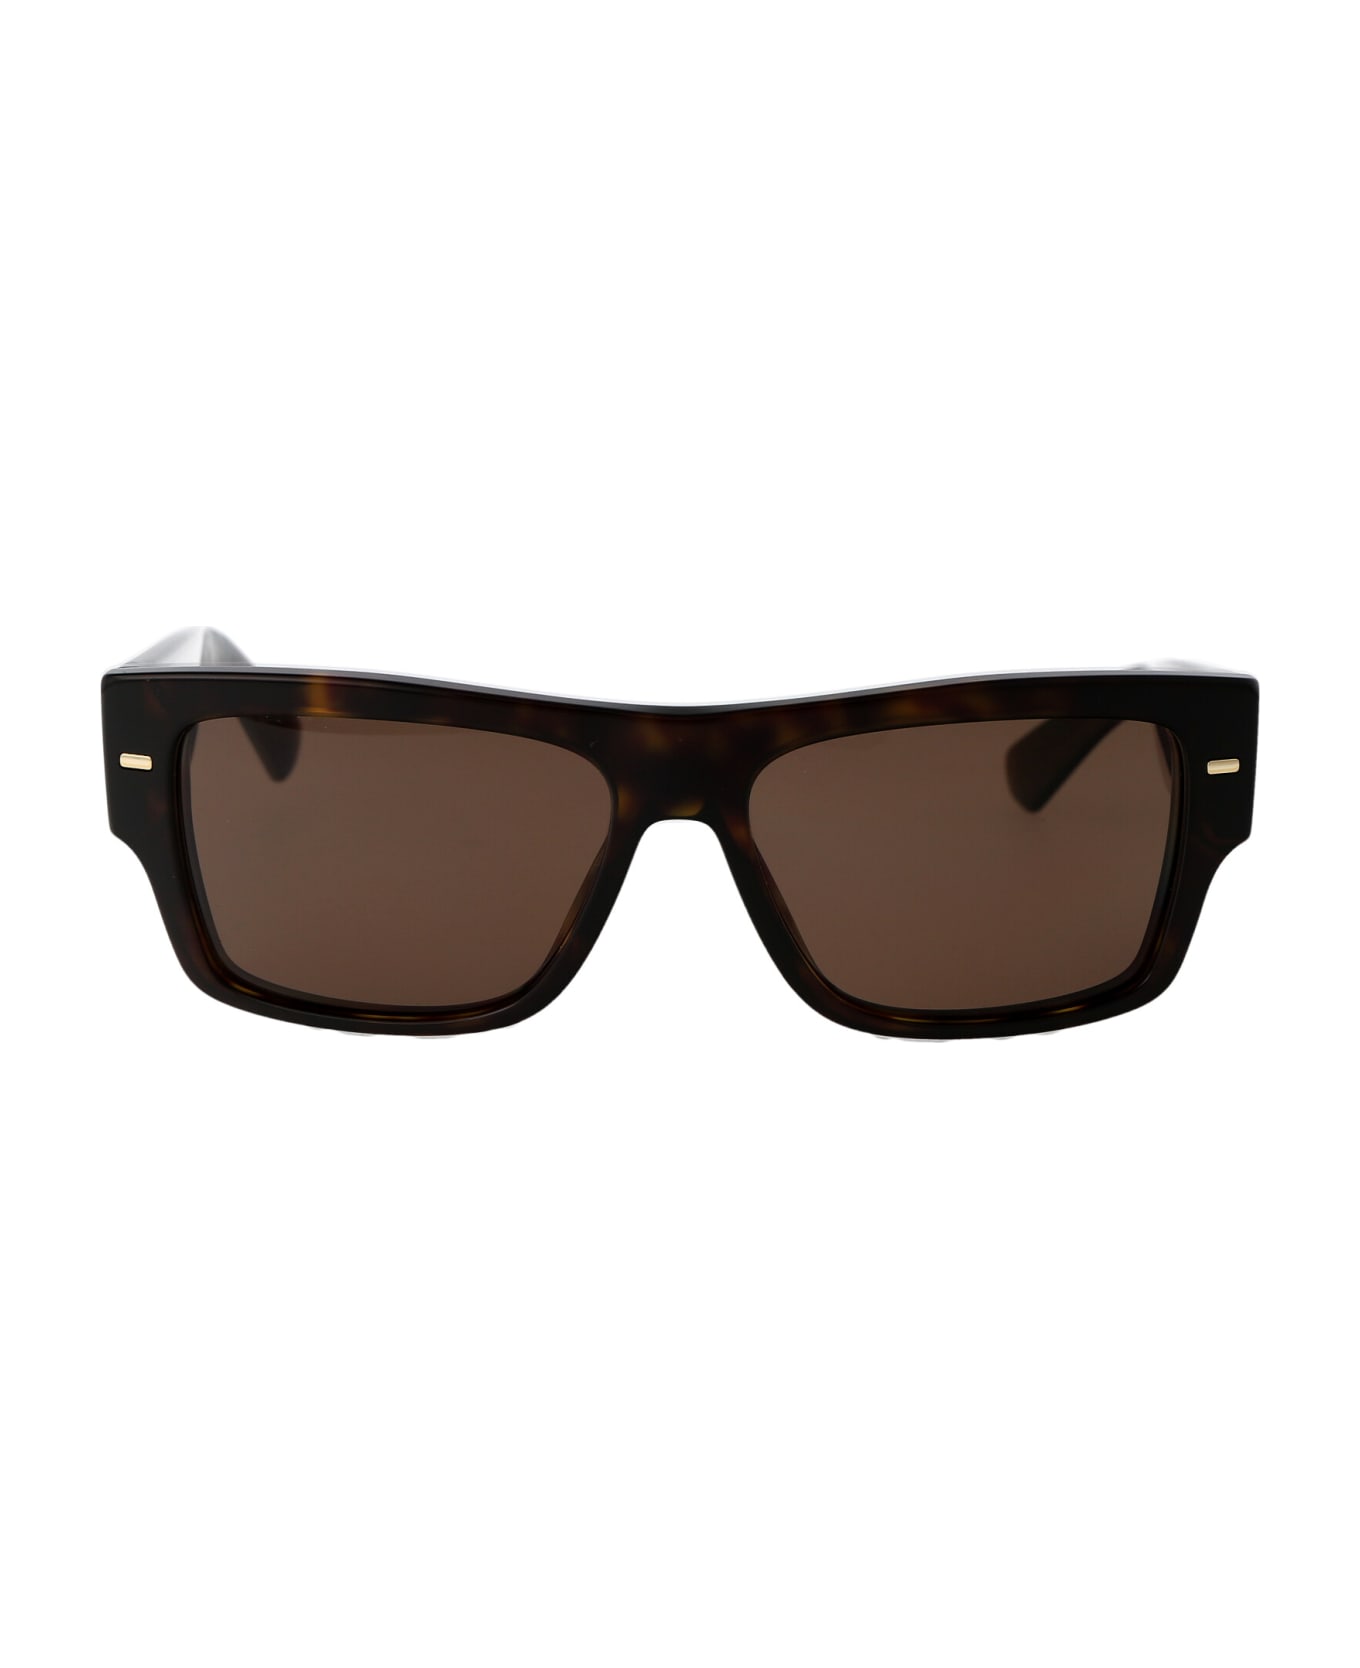 Dolce & Gabbana Eyewear 0dg4451 Sunglasses - 502/73 HAVANA